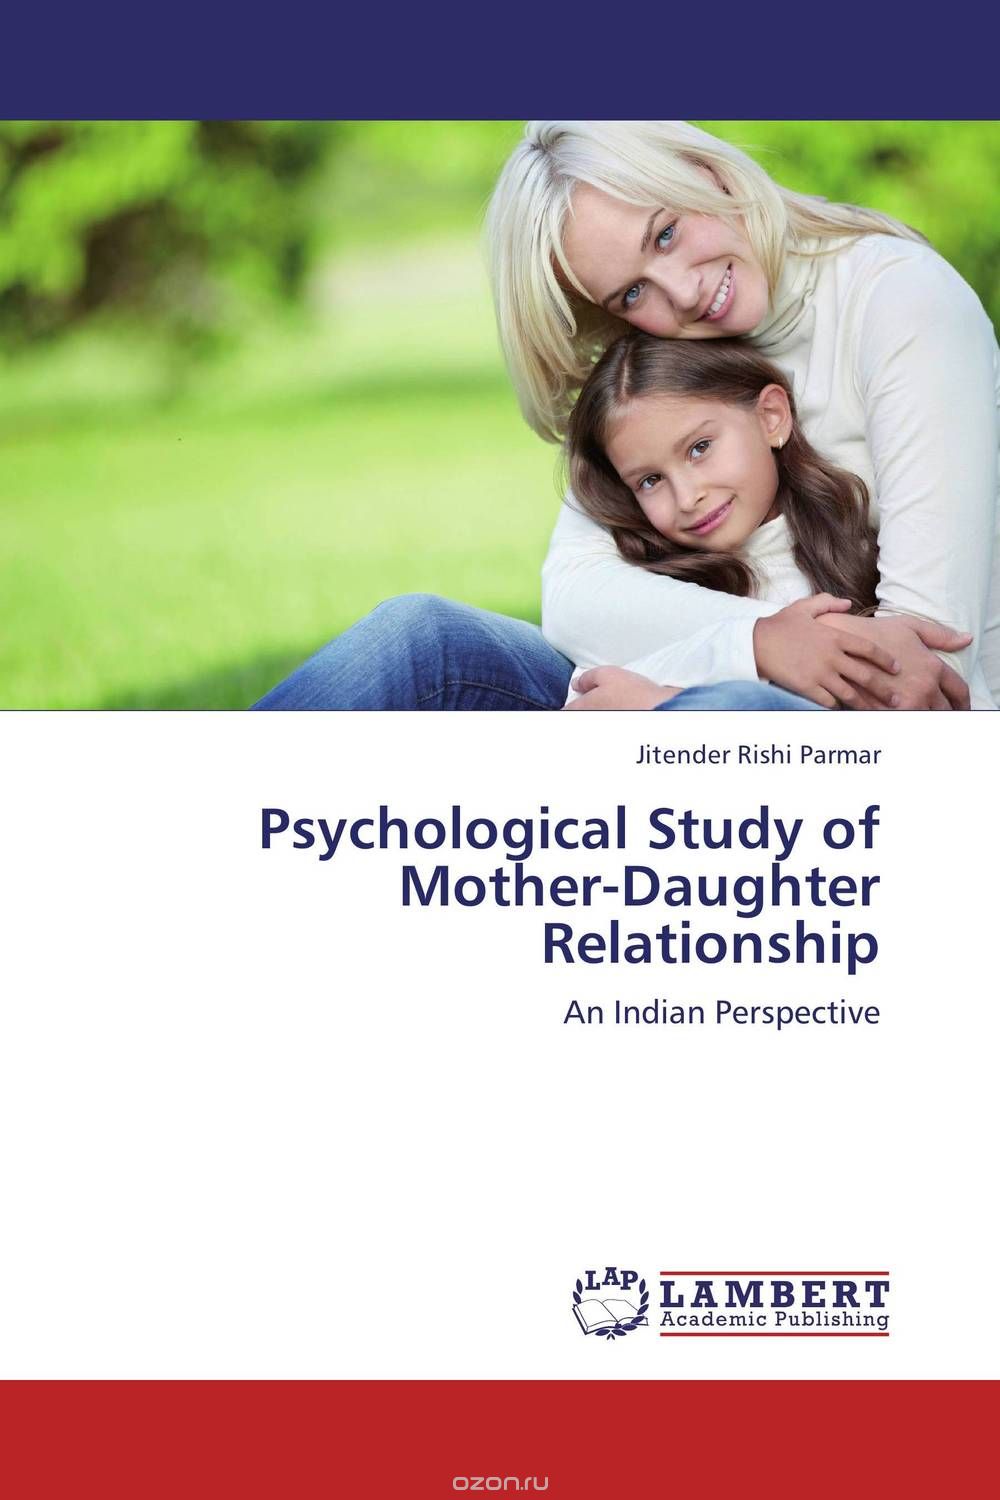 Скачать книгу "Psychological Study of Mother-Daughter Relationship"